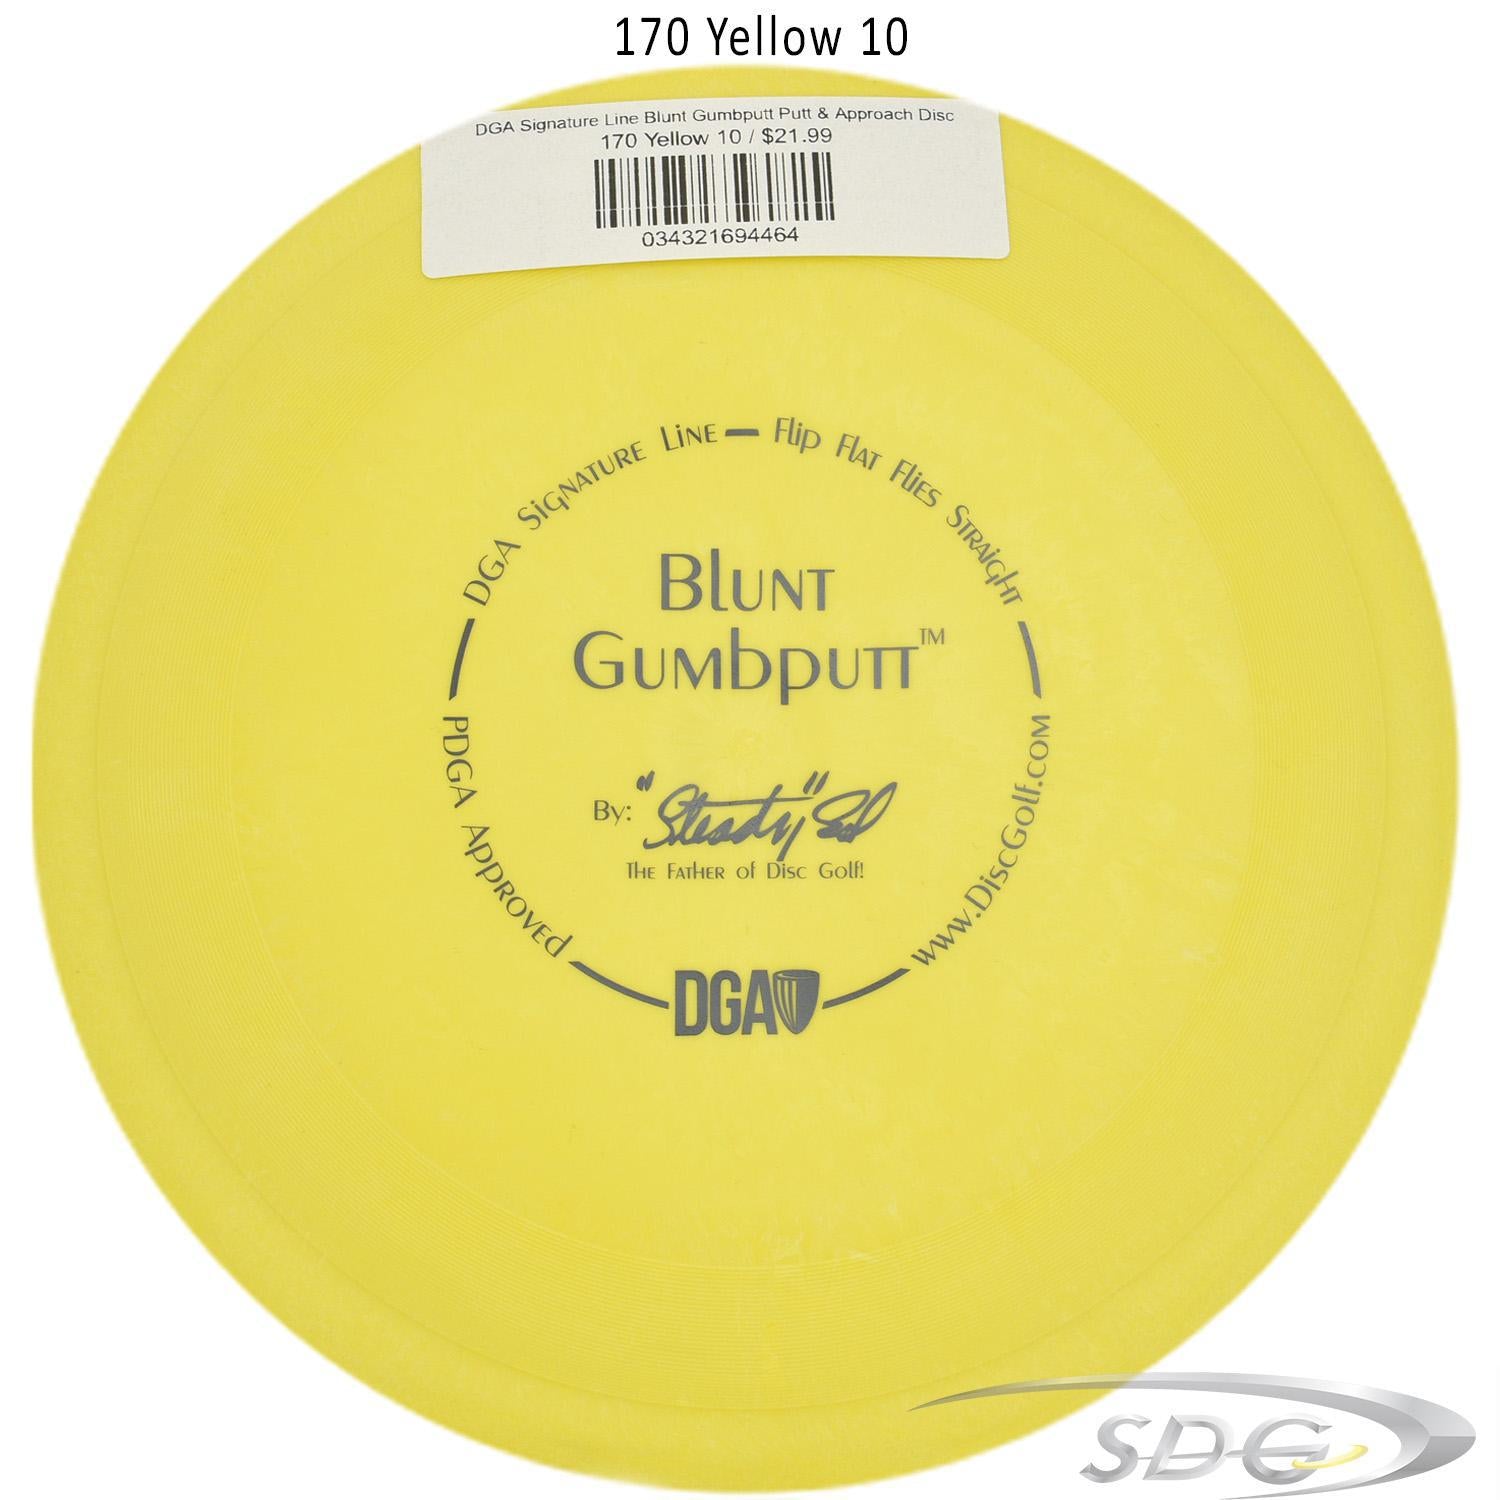 dga-signature-line-blunt-gumbputt-putt-approach-disc 170 Yellow 10 